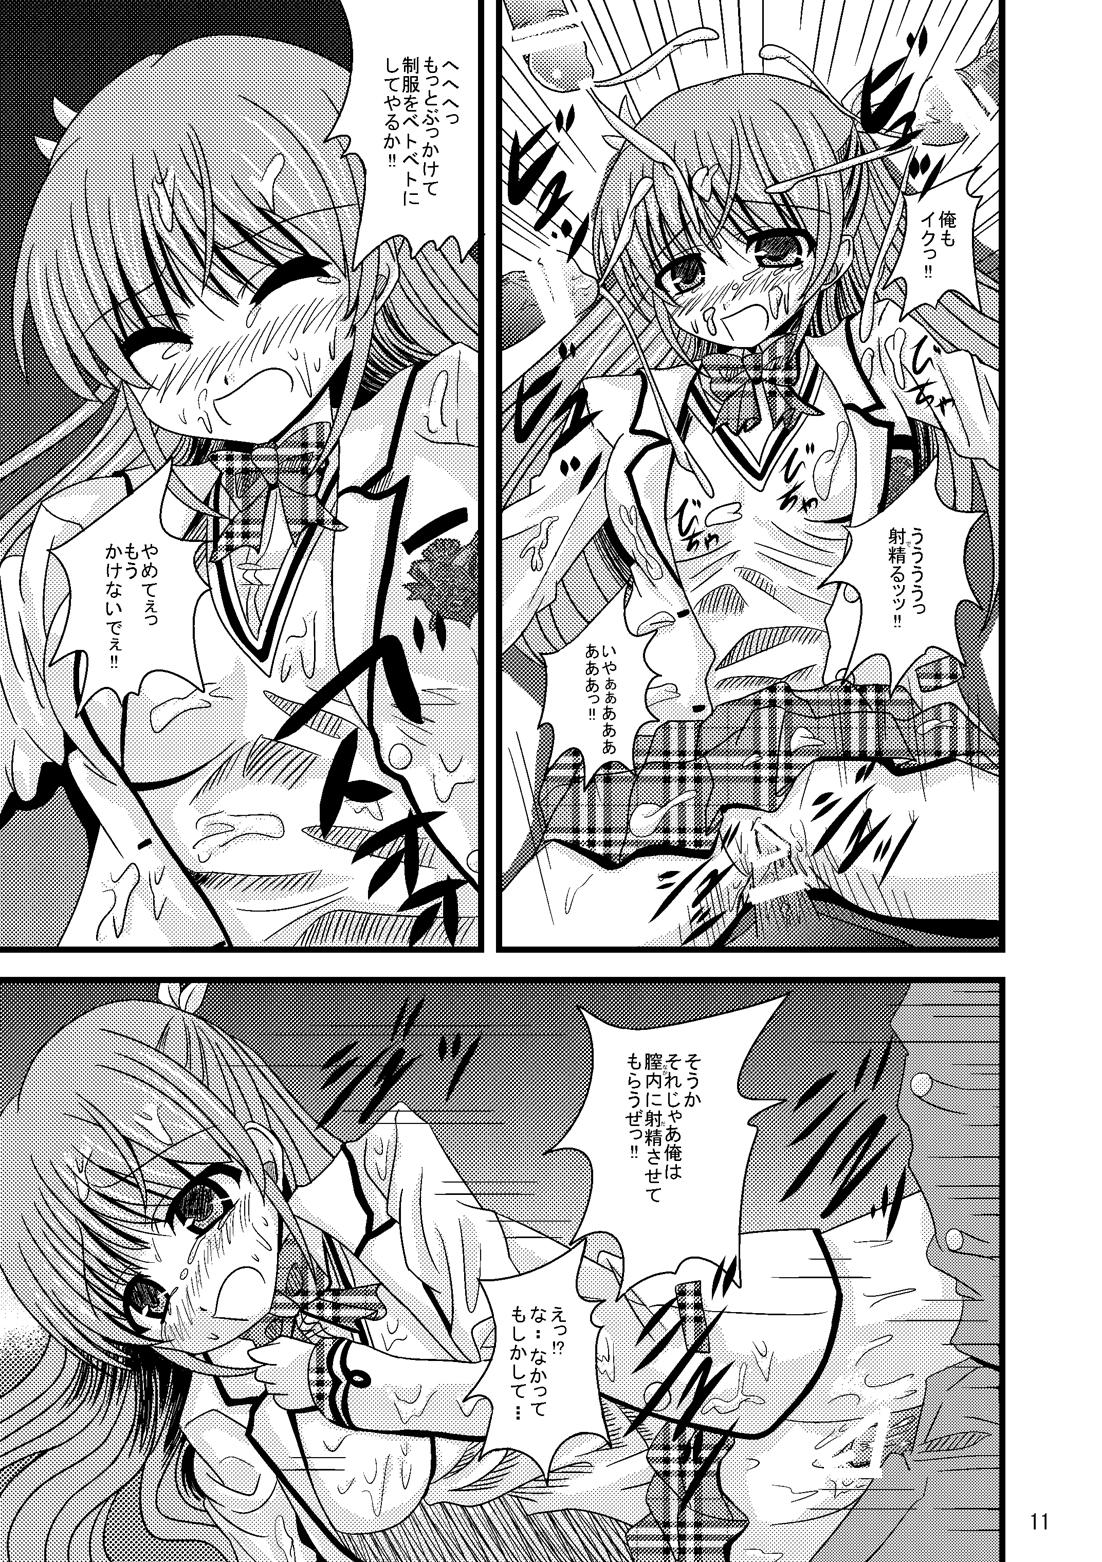 Cream Pie Roden Chikan Rape Shira* Tsugumi - Daitoshokan no hitsujikai Mexicana - Page 11